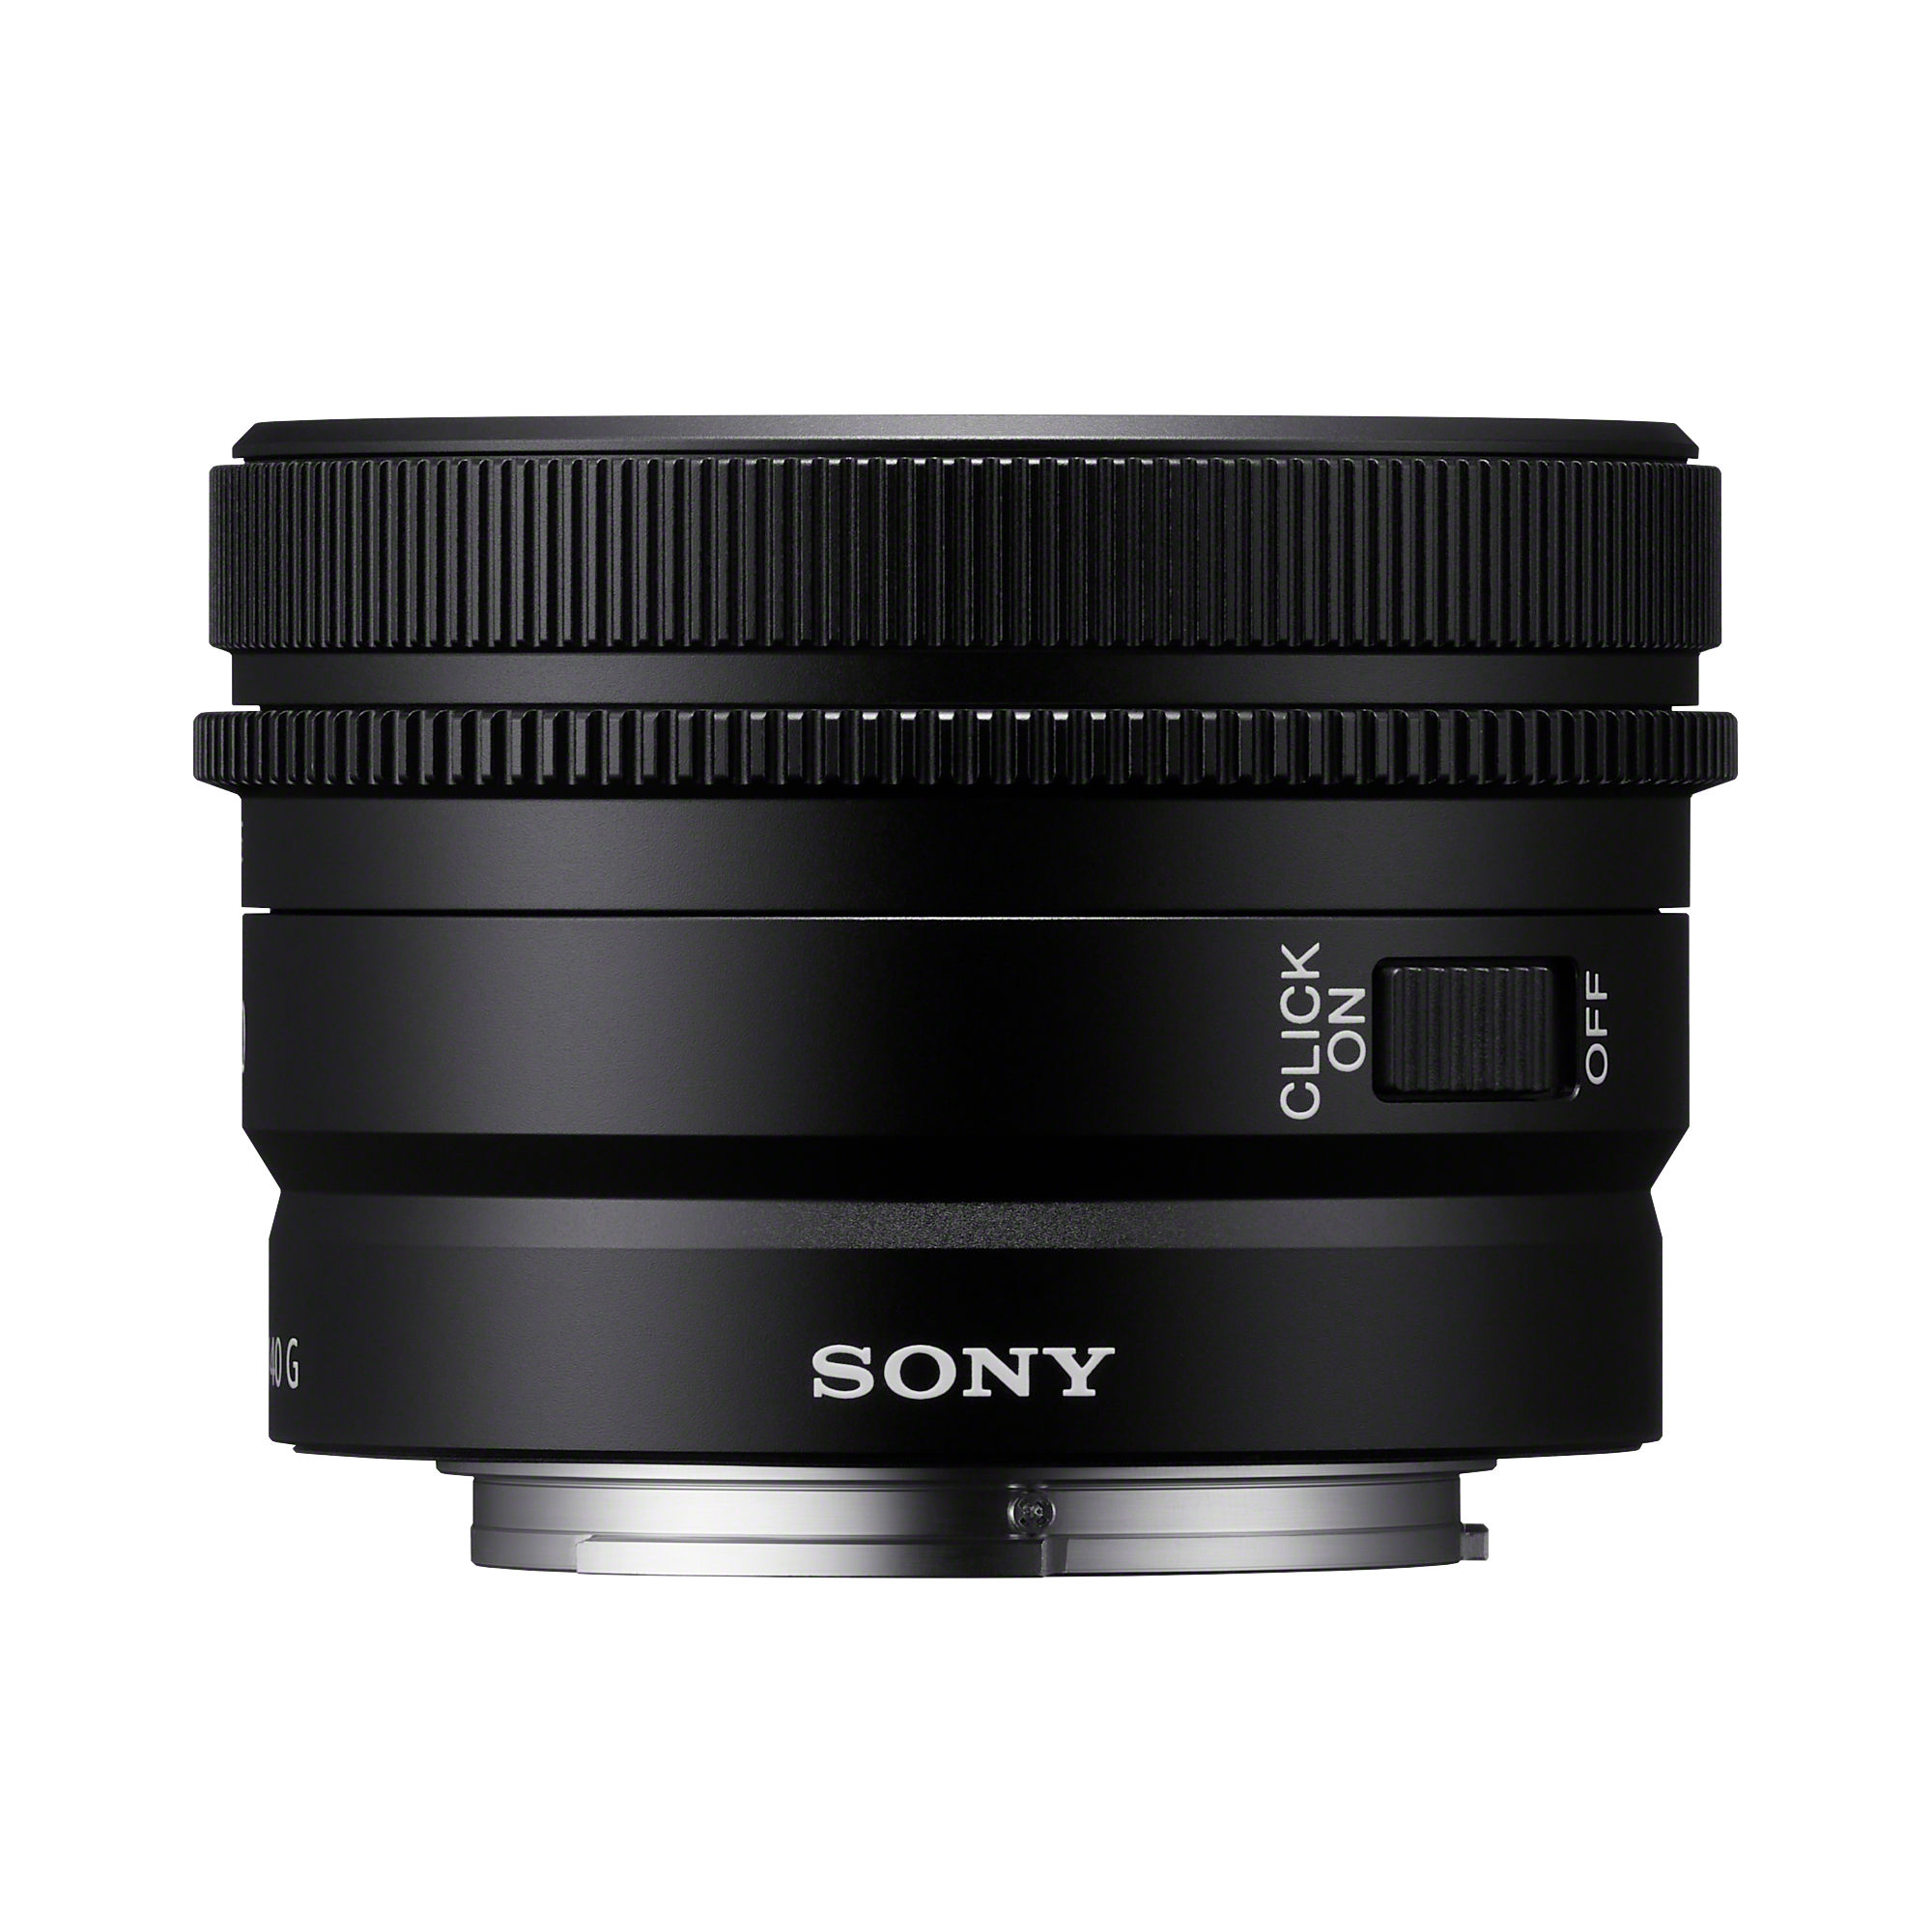 Sony FE 40mm F2.5 G Lens